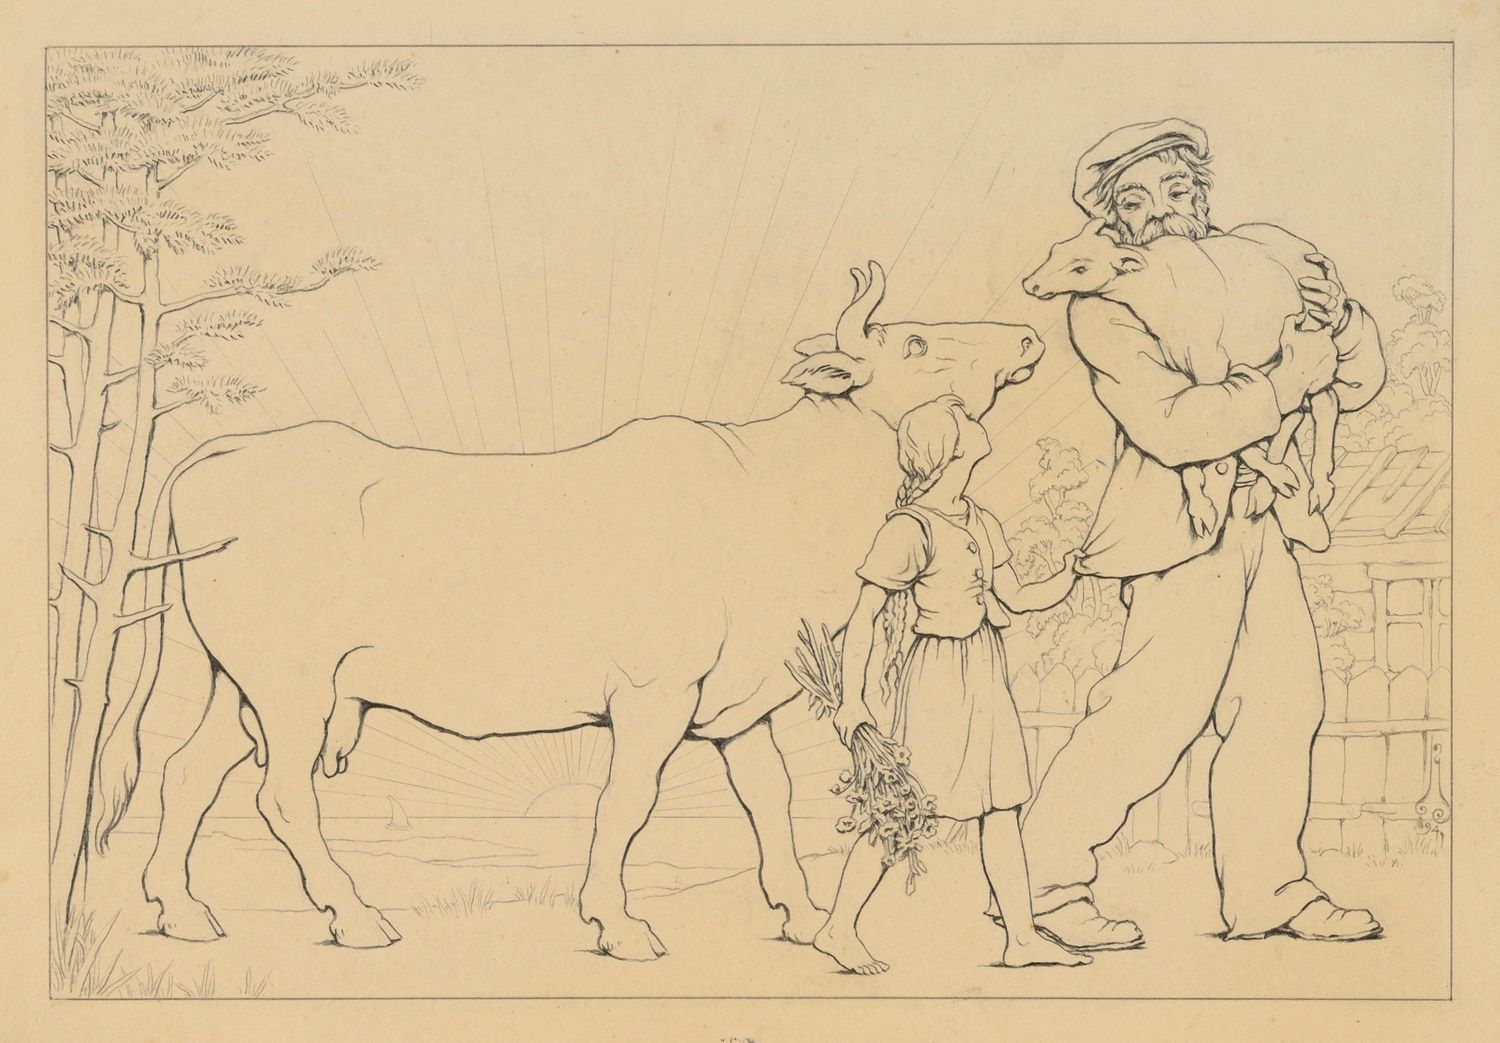 Null Nicolas KALMAKOFF (1873-1955)

Rückkehr von den Feldern 

16,5 x 24 cm